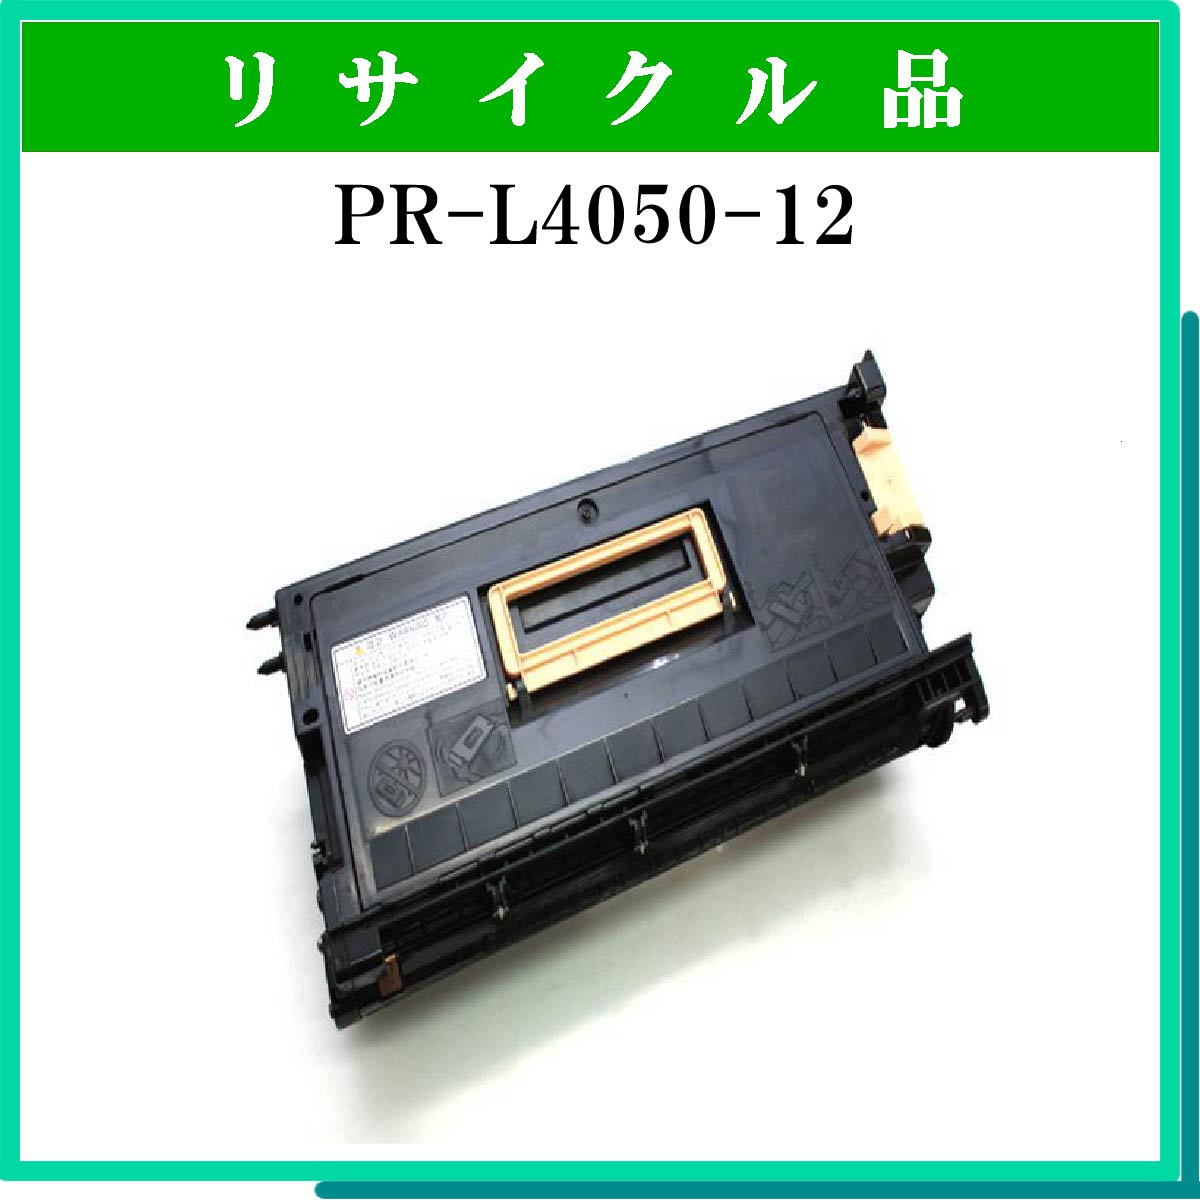 PR-L4050-12